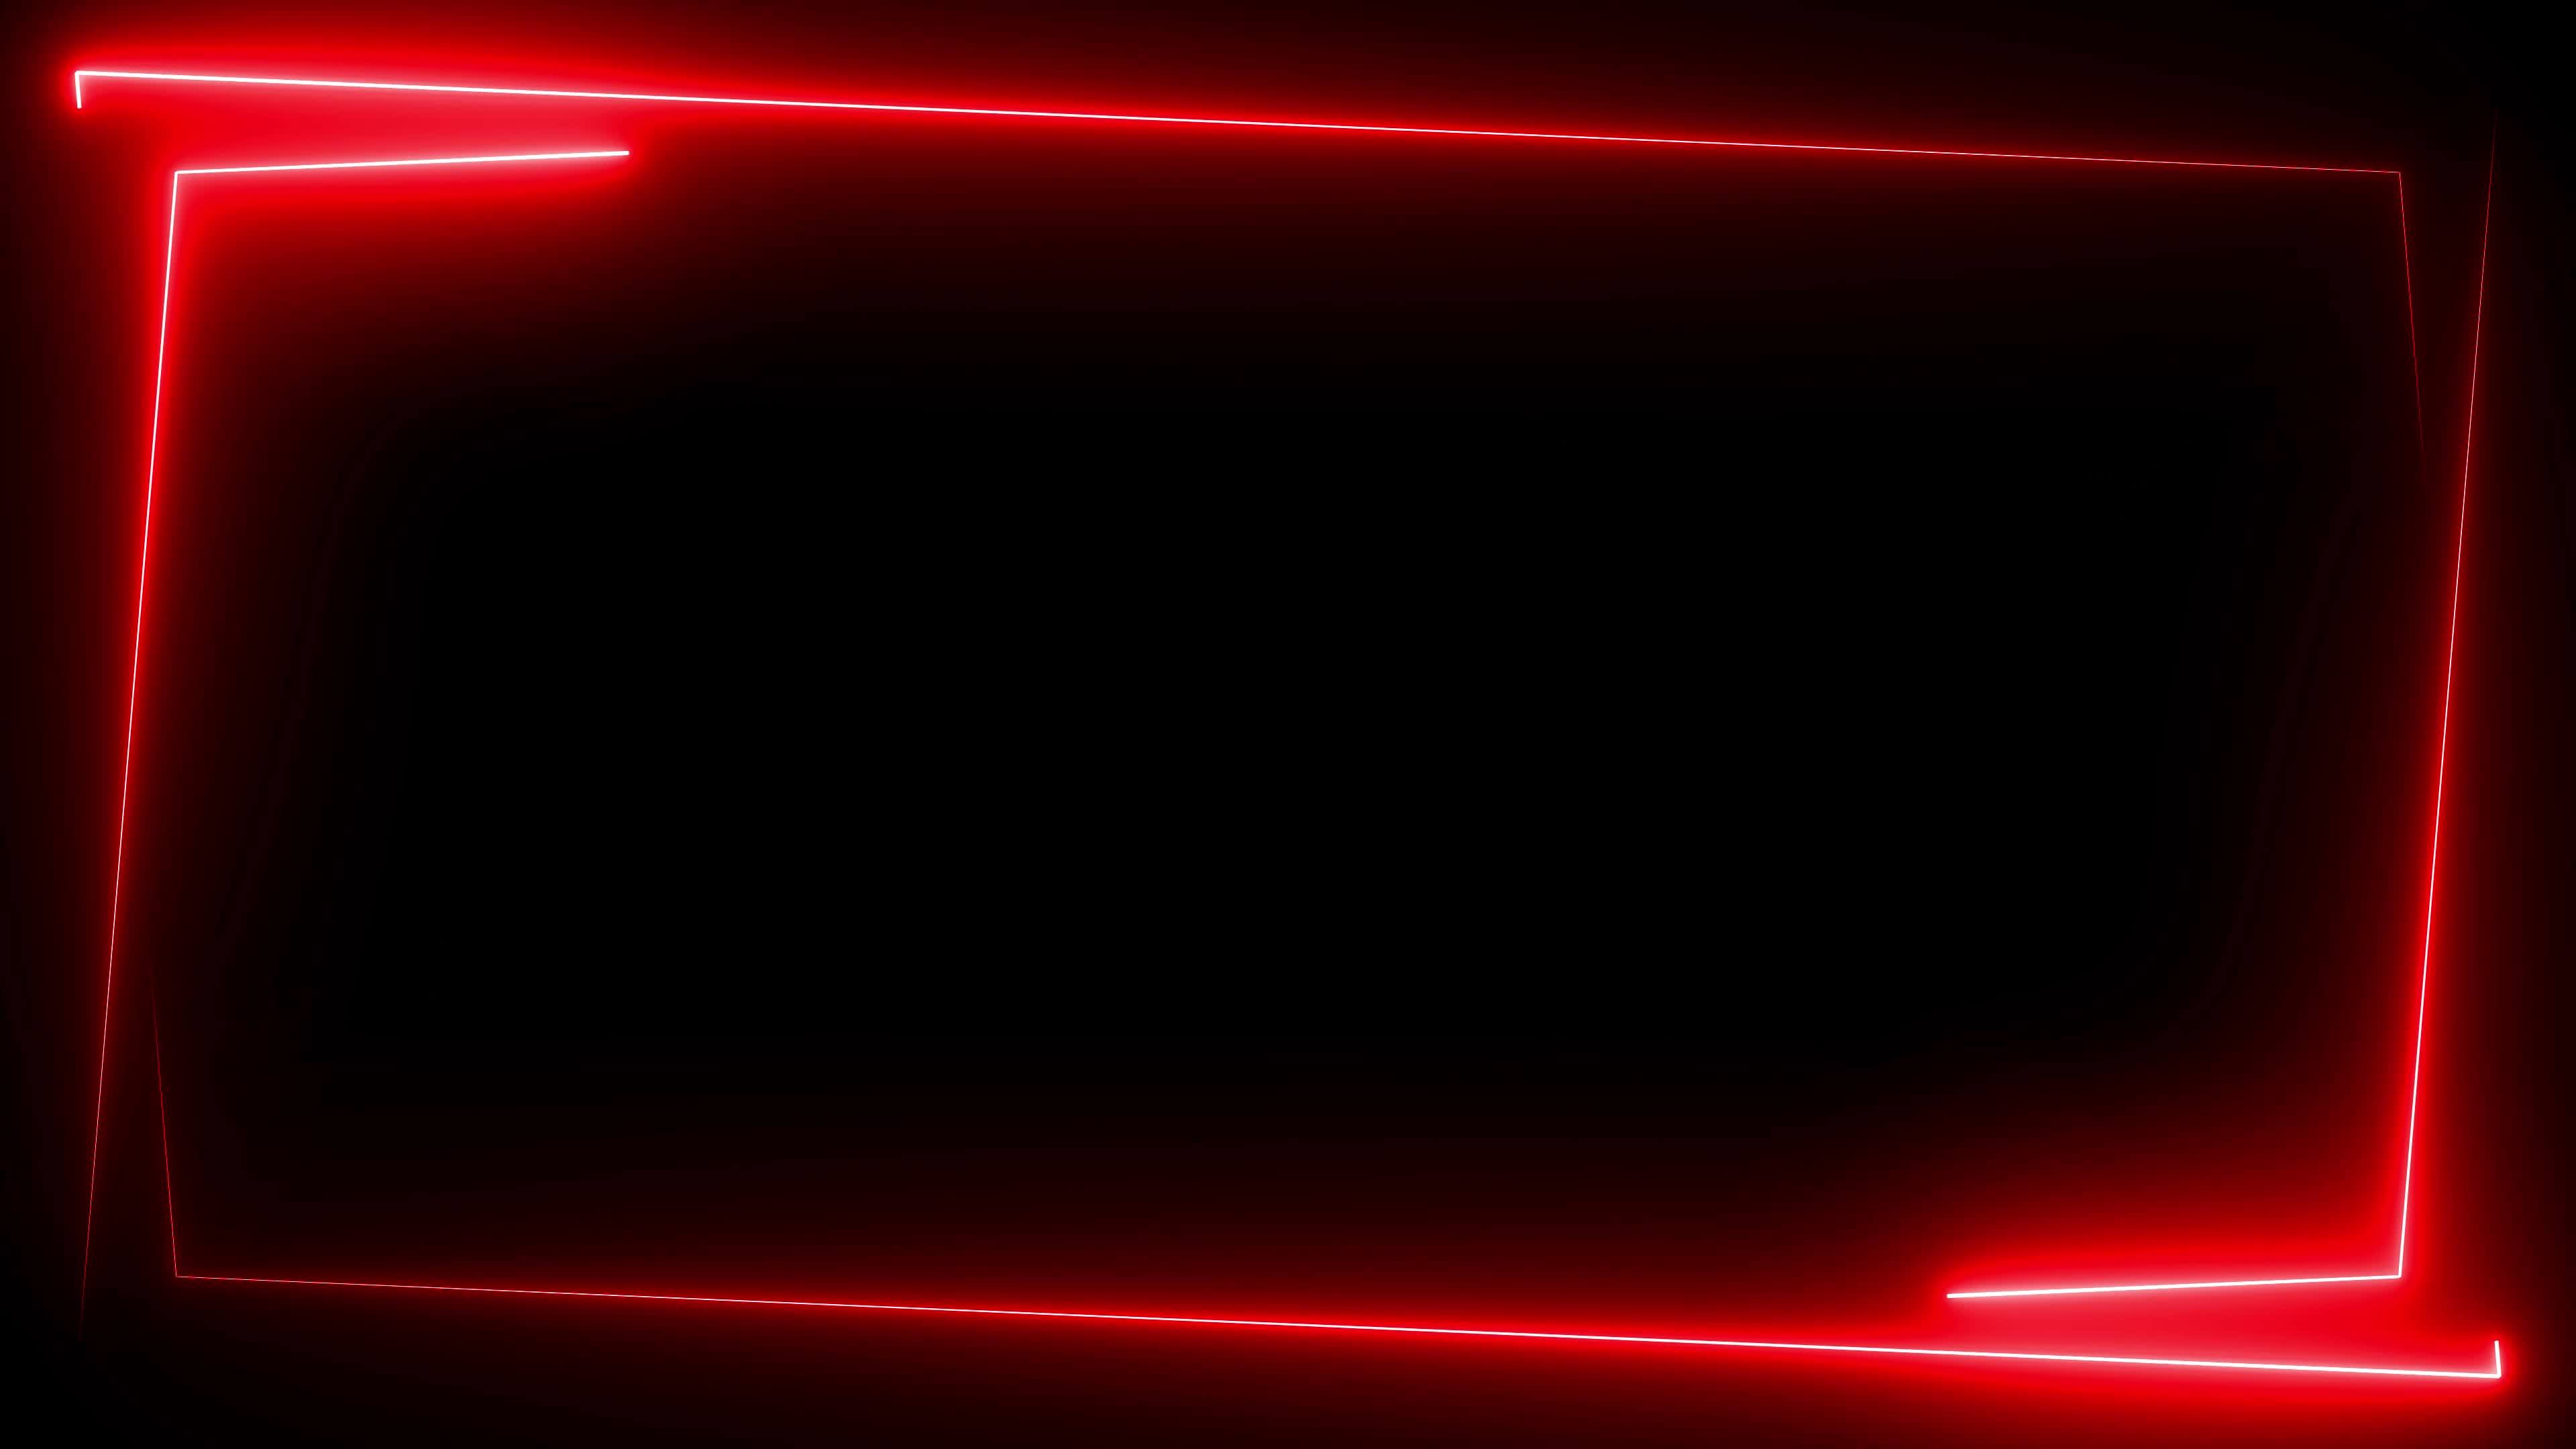 Khung đèn neon đỏ trên nền đen 4k làm nổi bật hình nền của bạn. Gợi lên sự táo bạo, mạnh mẽ, tinh tế. Trải nghiệm độ phân giải 4k, bạn sẽ chìm đắm vào cảm giác tuyệt vời khi chiêm ngưỡng hình nền.